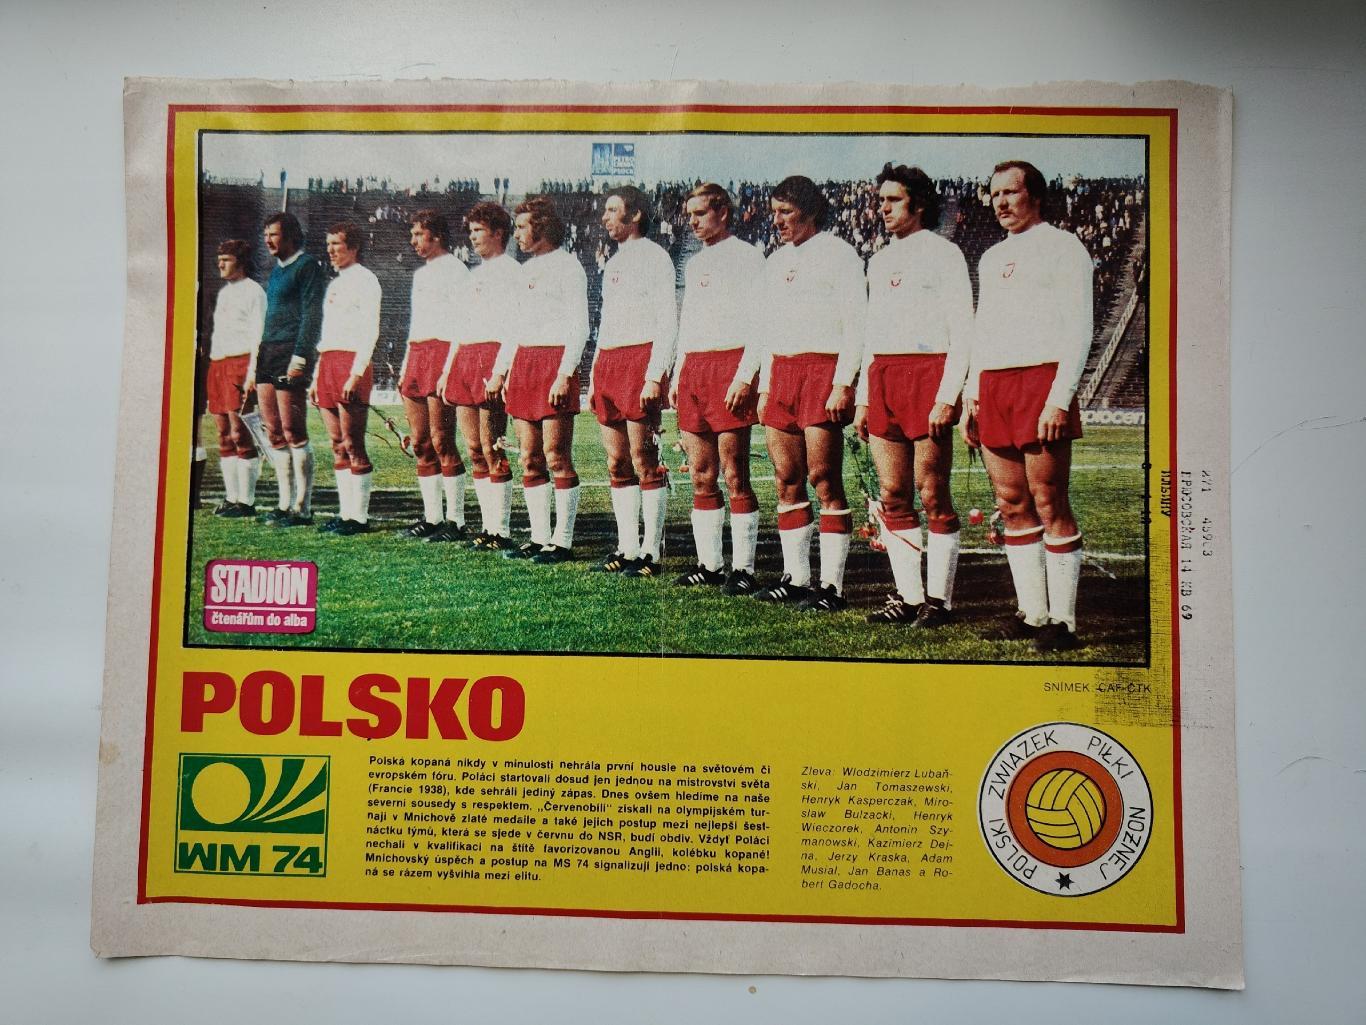 Постер. Сборная Польша 1974 ЧМ (журнал Стадион/Stadion Чехословакия)